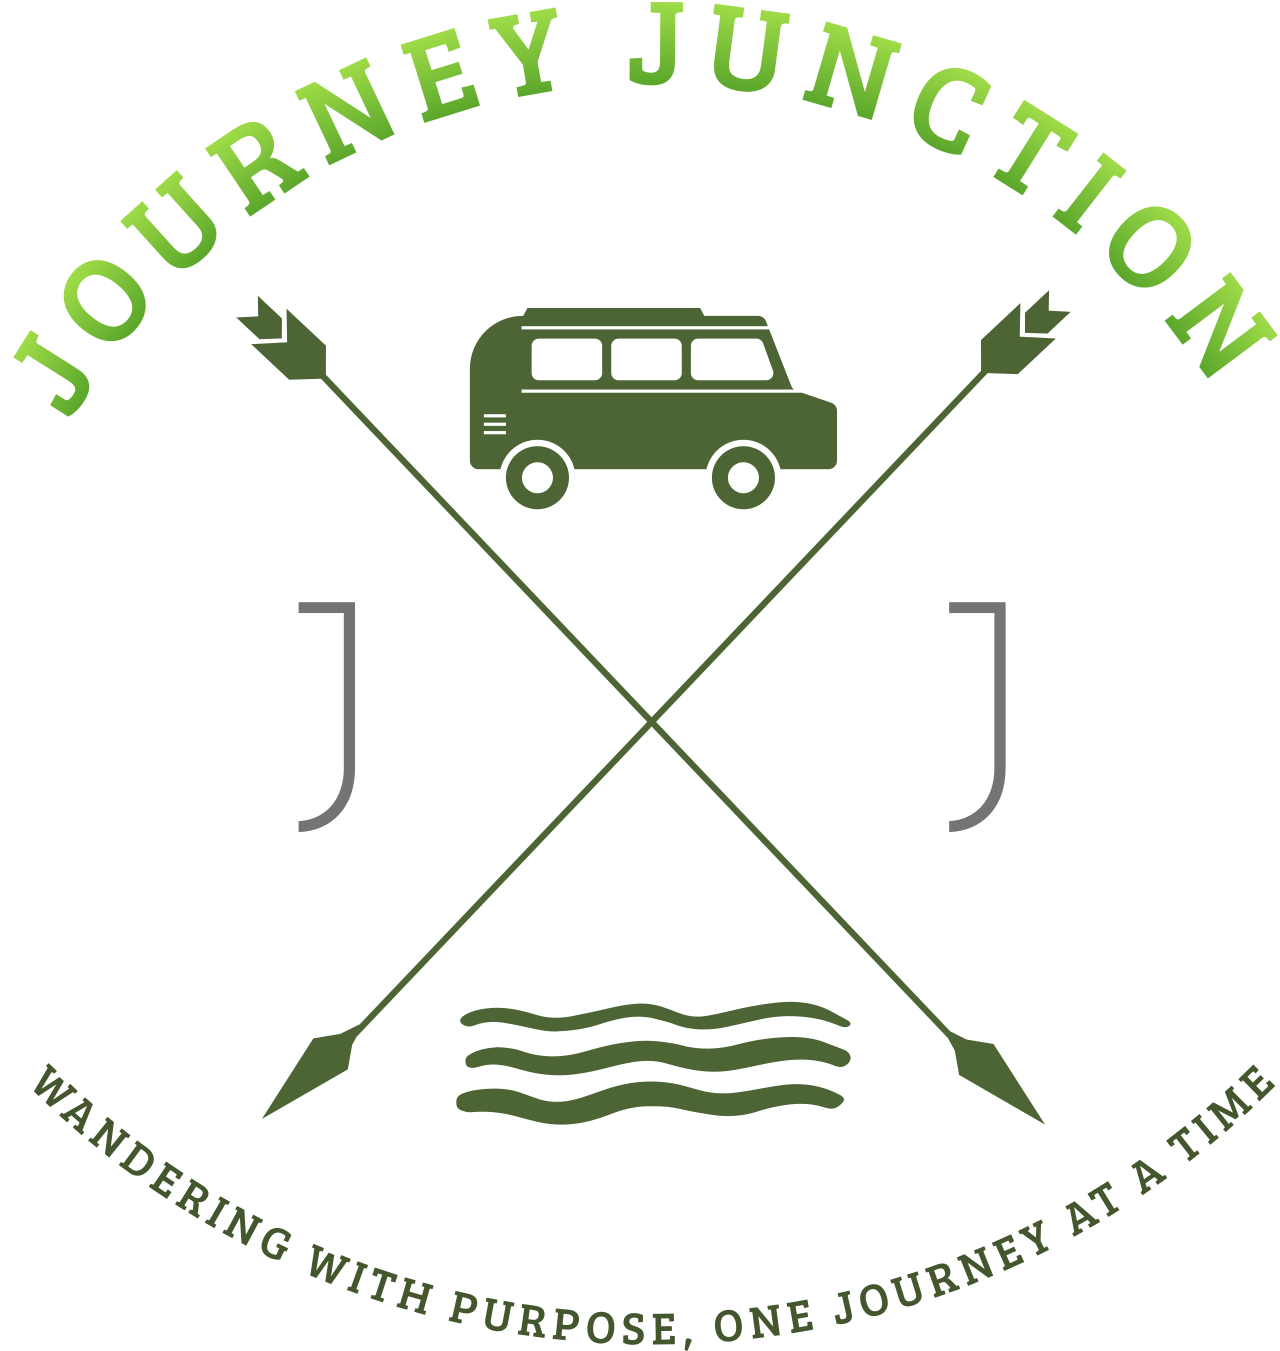 JOURNEY JUNCTION 's logo